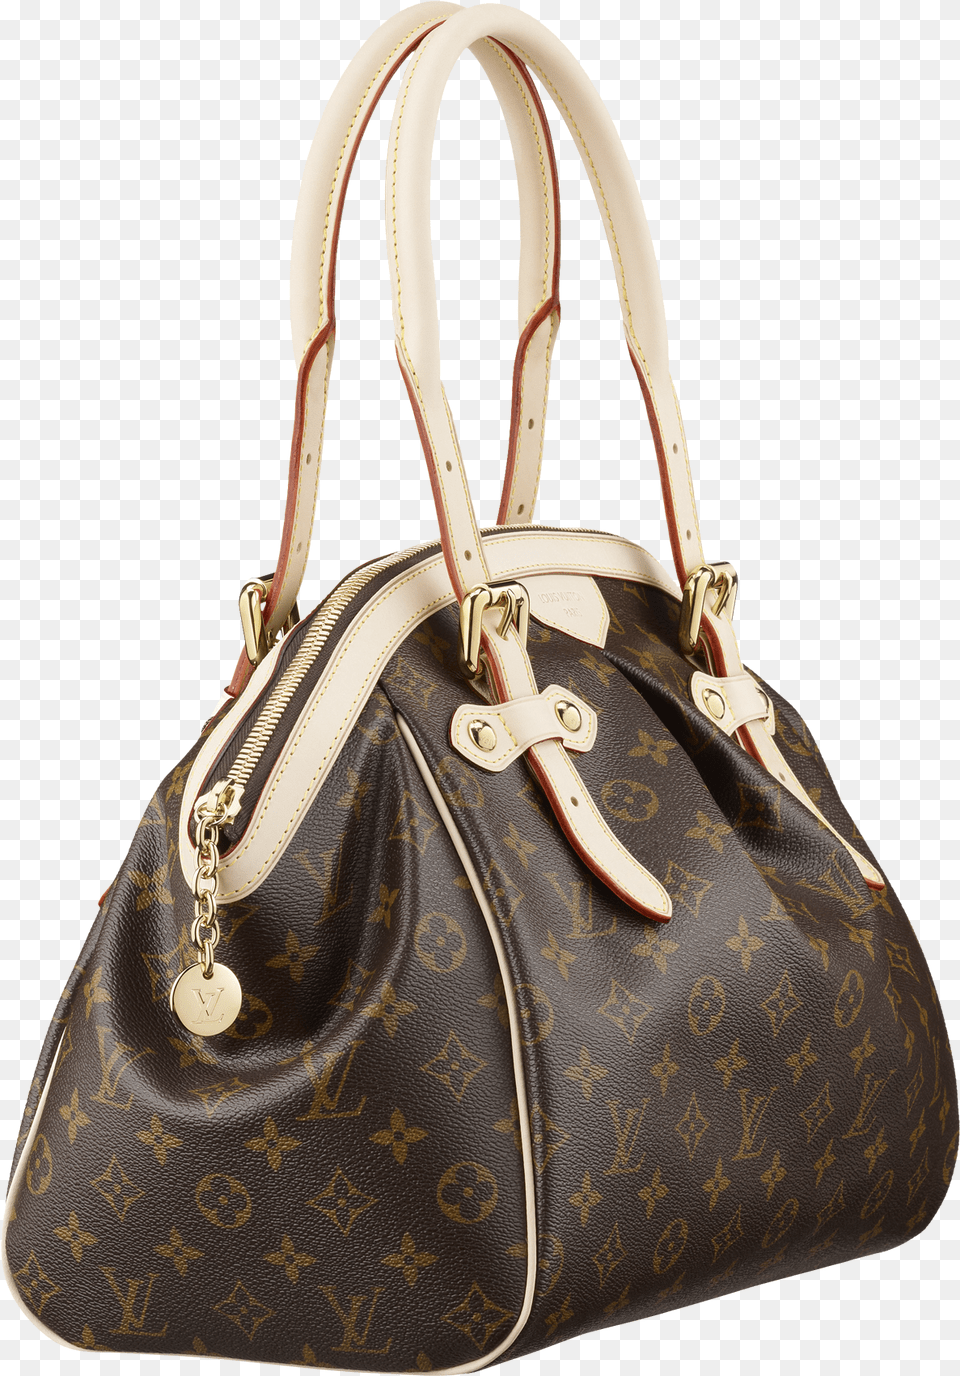 Louis Vuitton Women Bag Image Louis Vuitton Bag, Accessories, Handbag, Purse Free Transparent Png